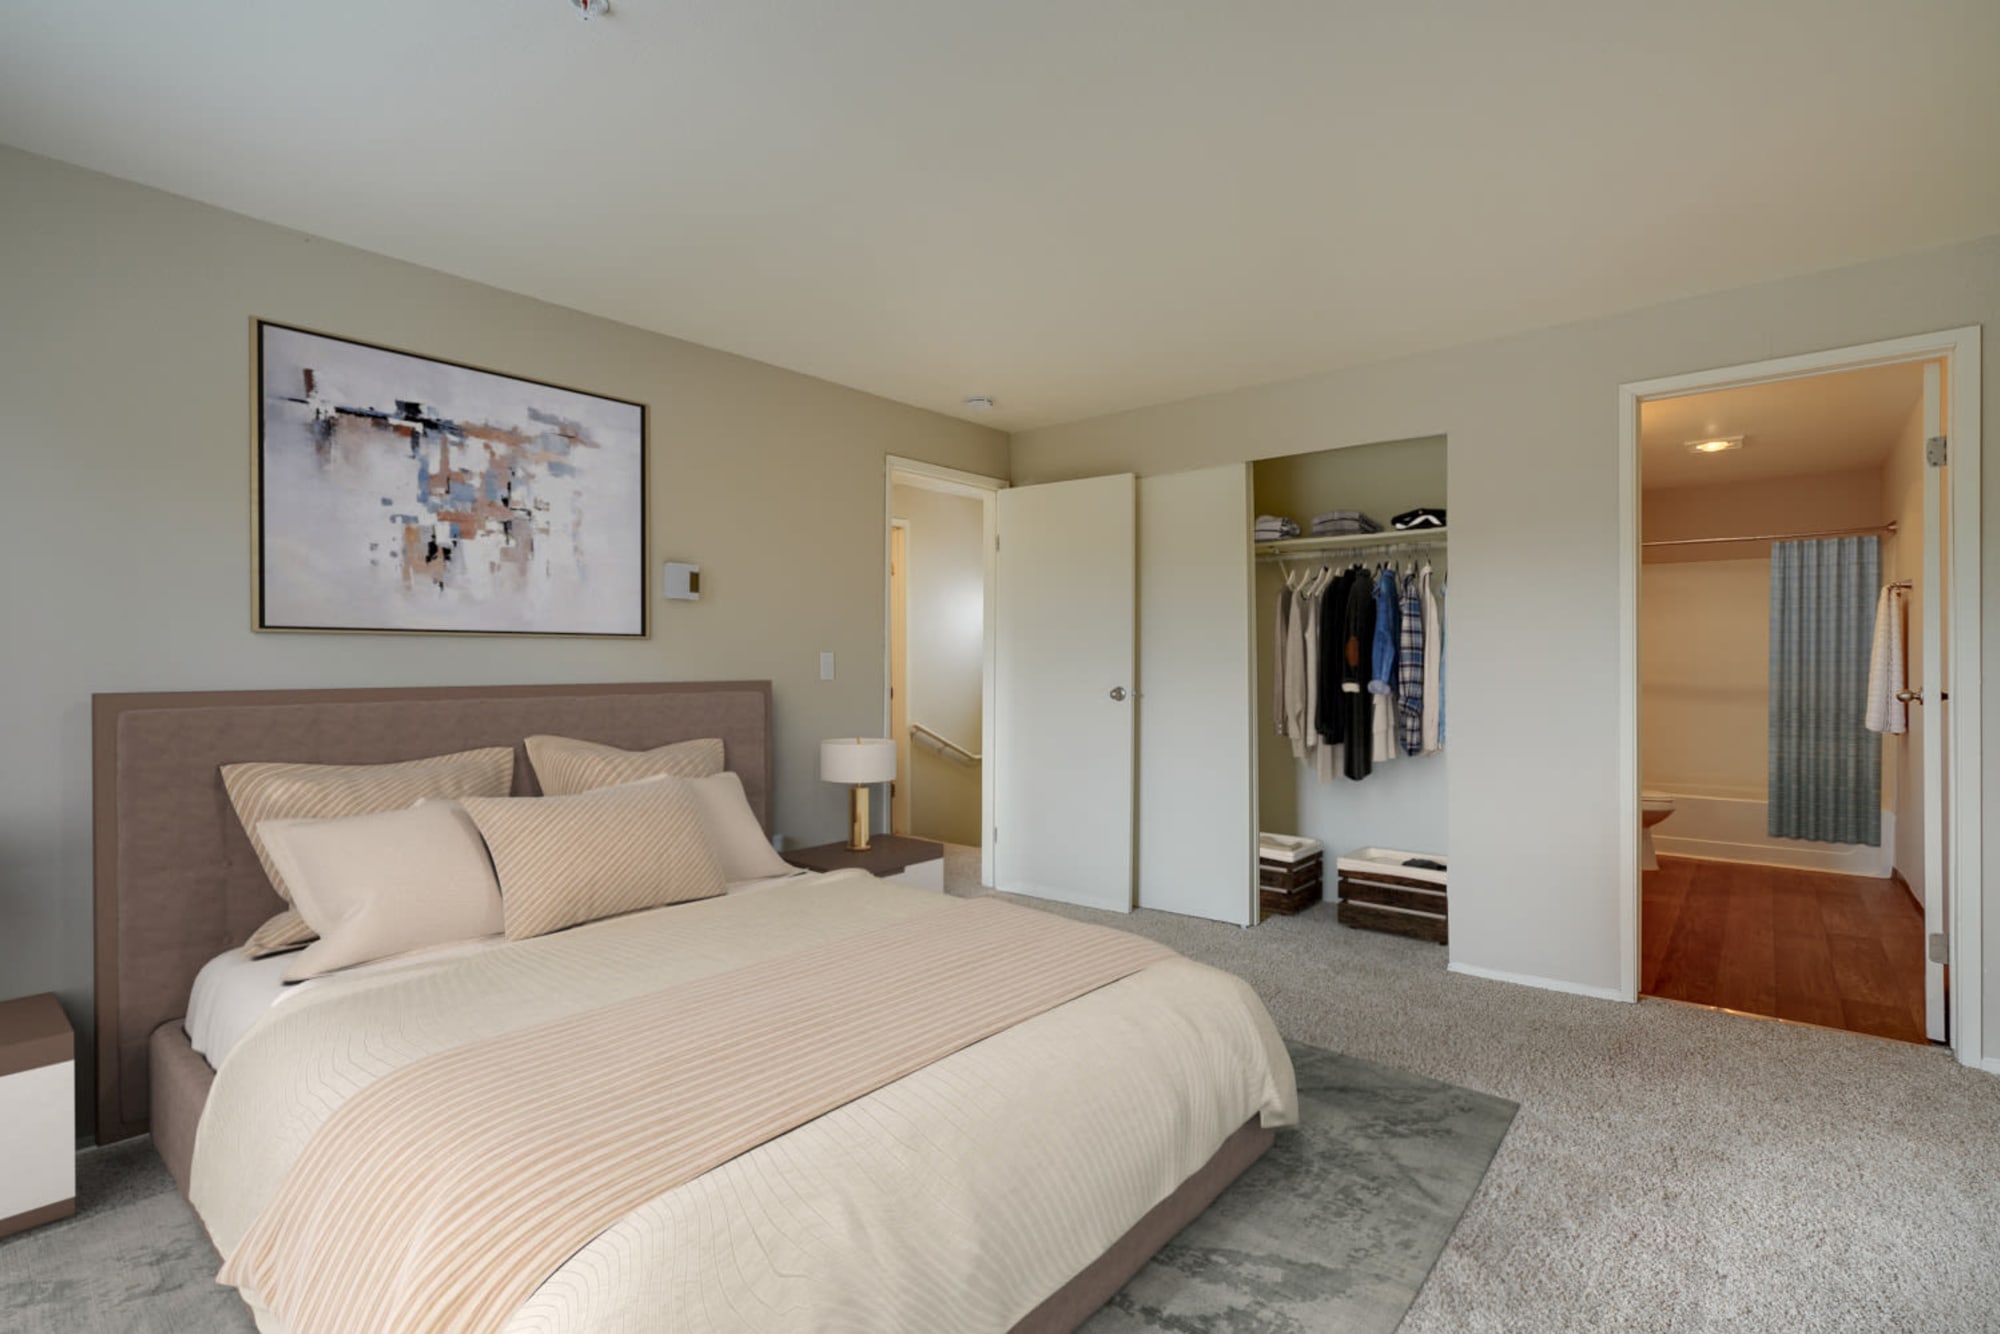 Bedroom at Renaissance at 29th Apartments in Vancouver, Washington